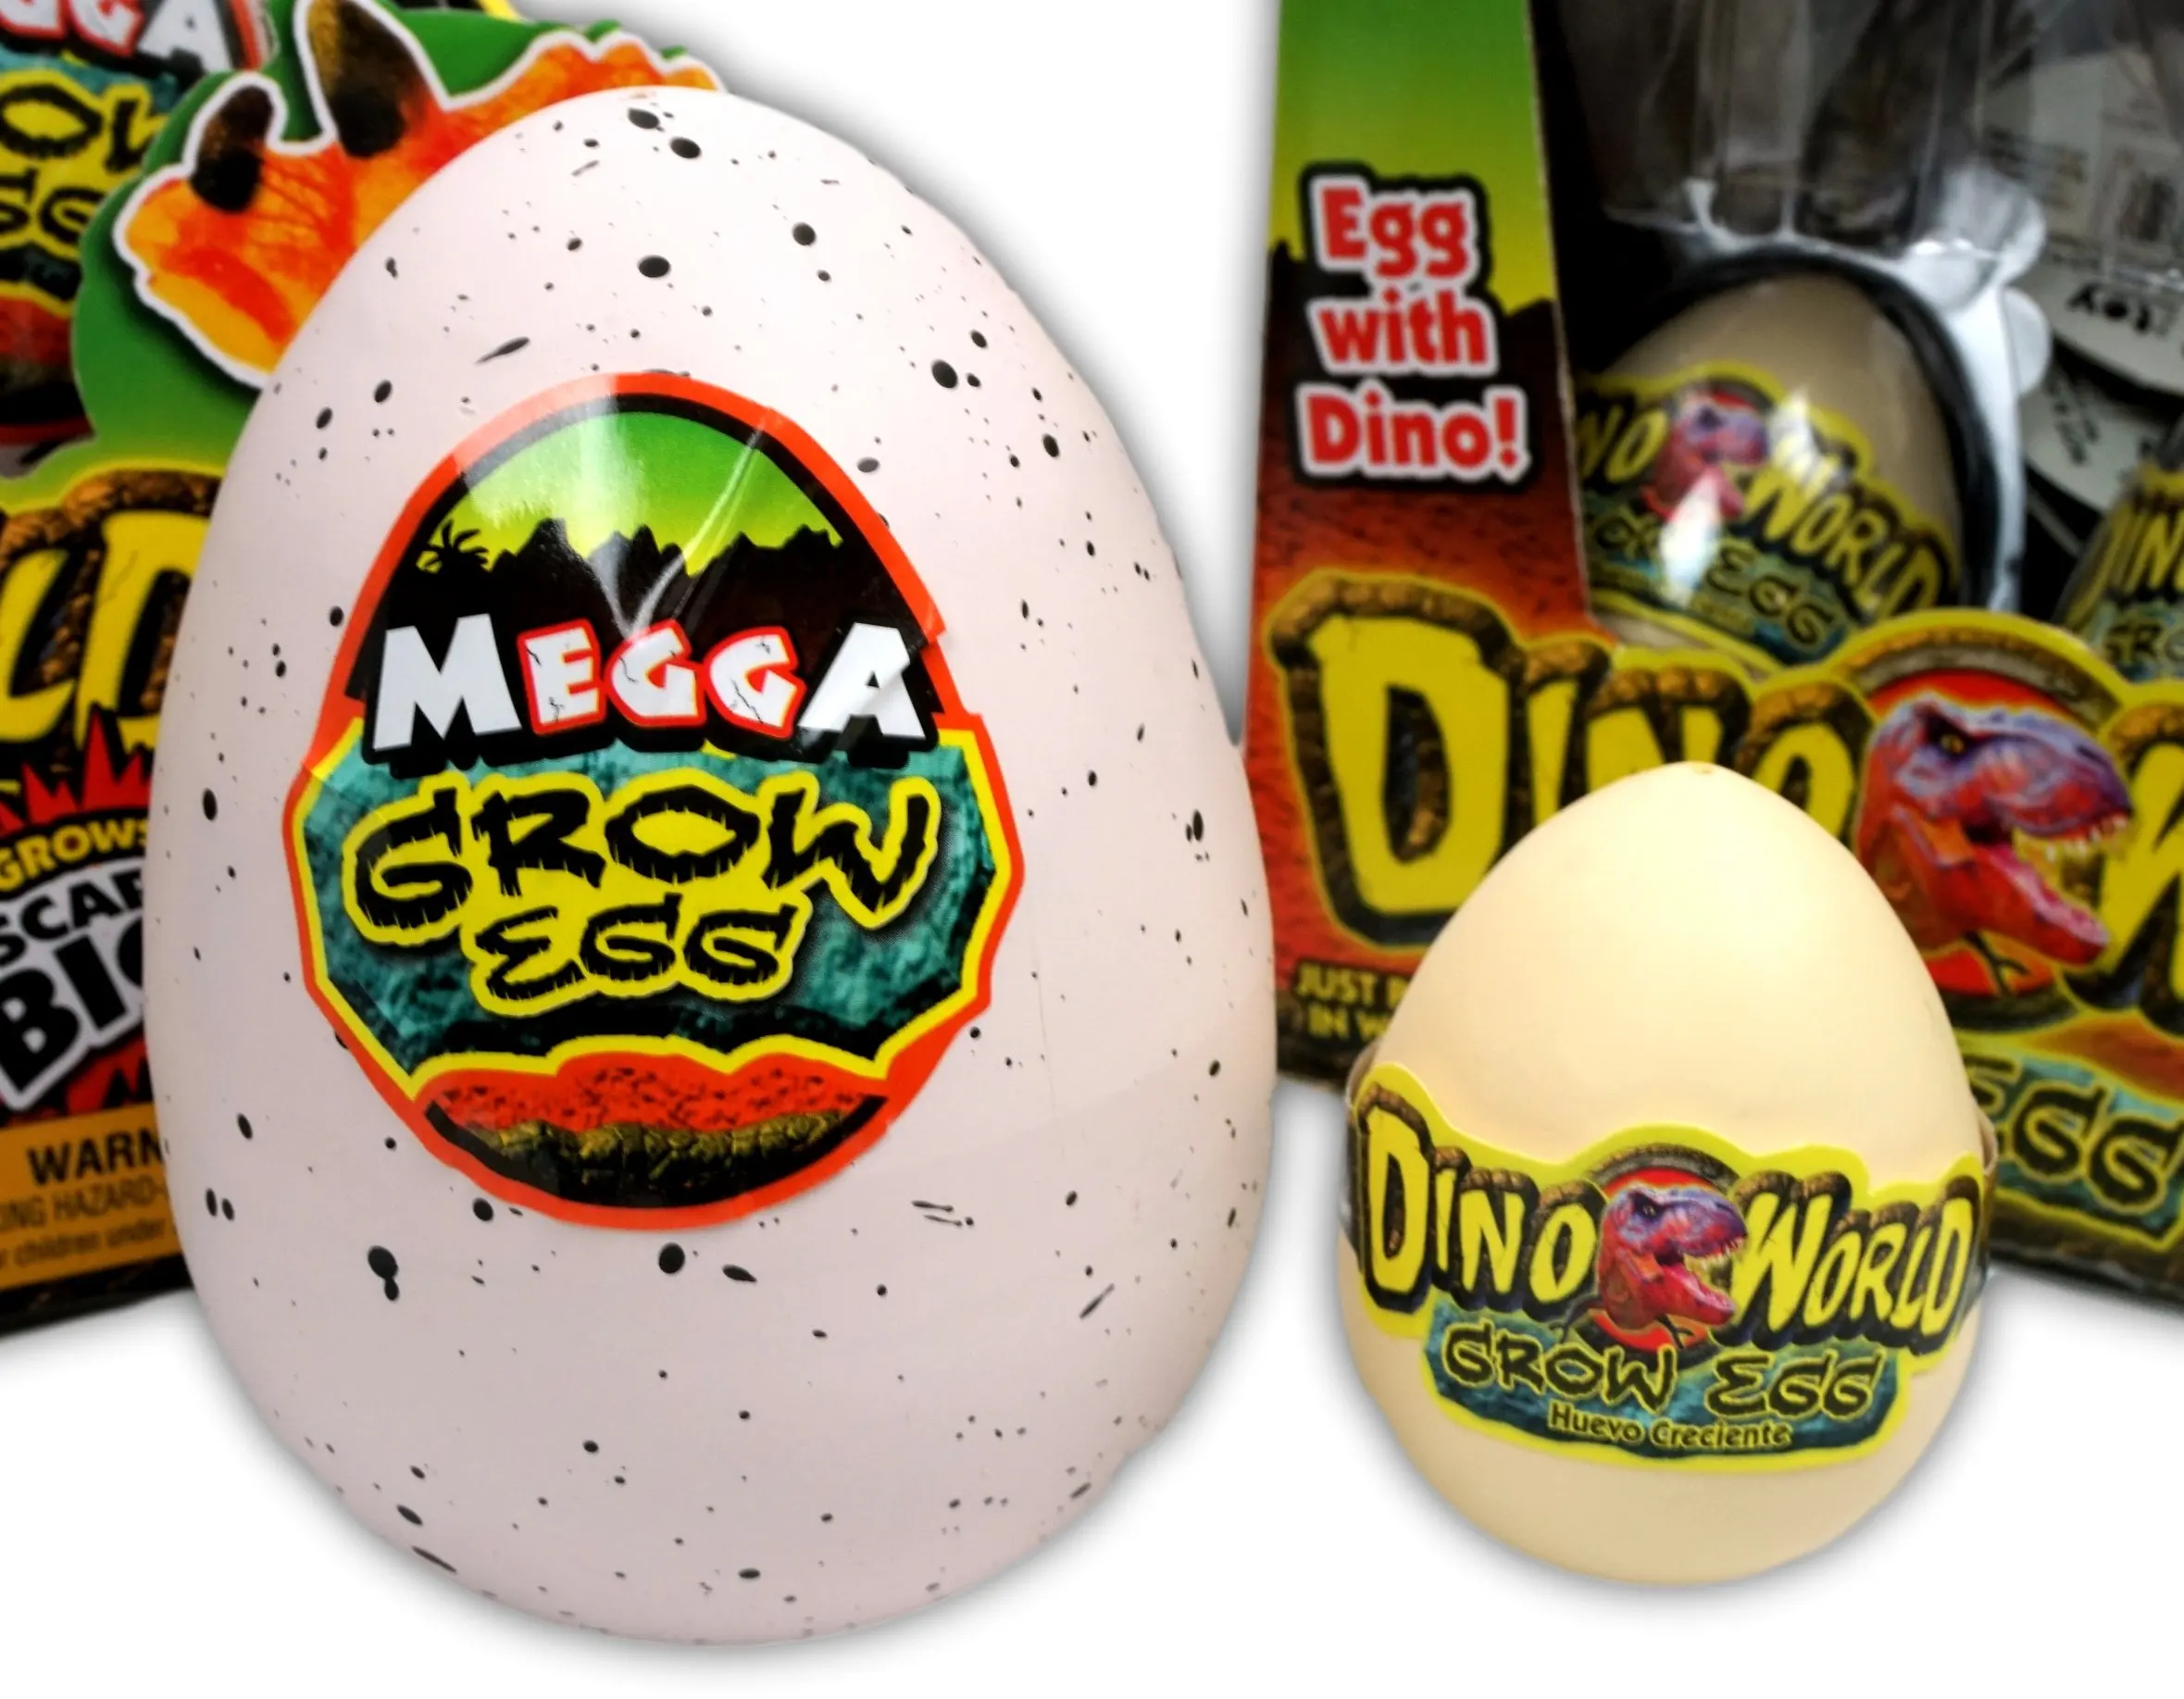 megga grow egg